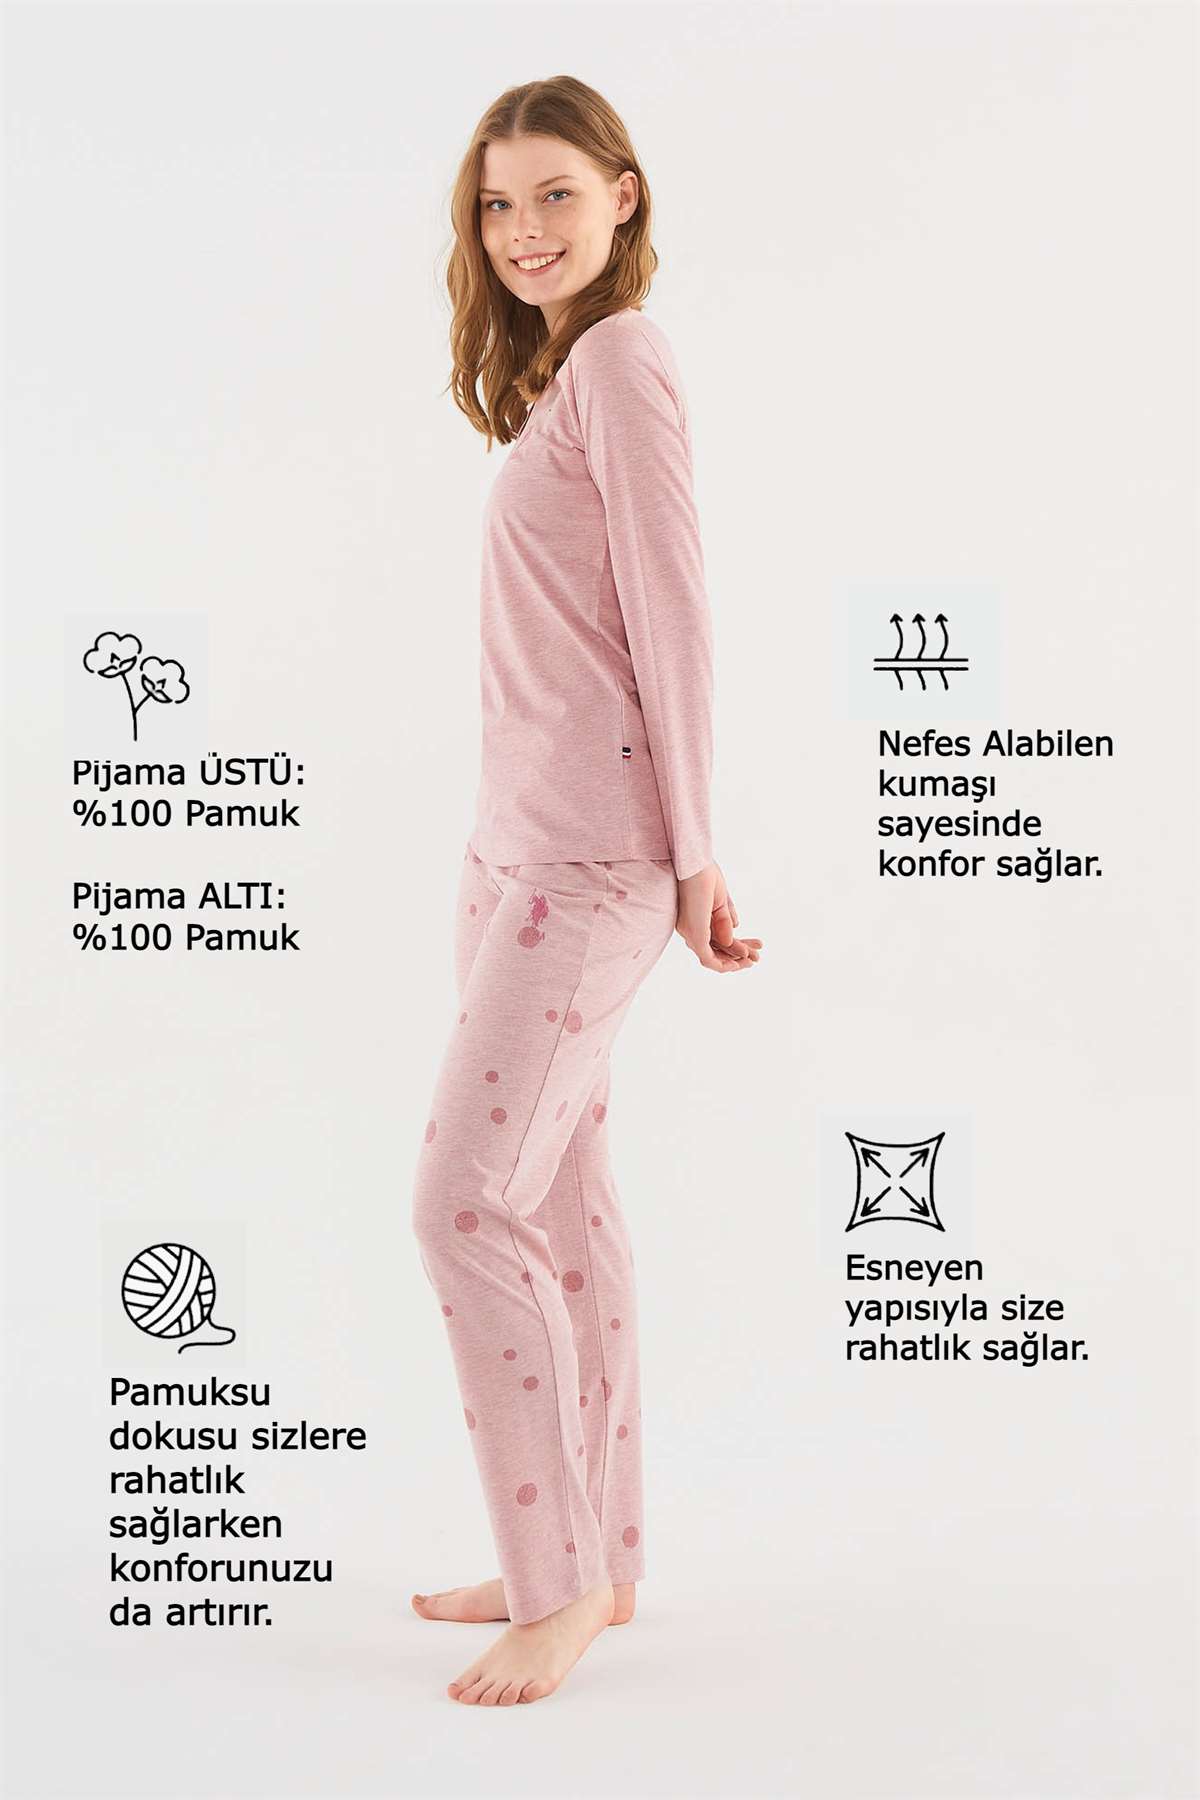 U.S. POLO Assn.Kadın Pembe Pijama Takımı indirimli fiyat seçenekleri ile  modcollection.com.tr 'de Pijama kategorisinde sizi bekliyor!